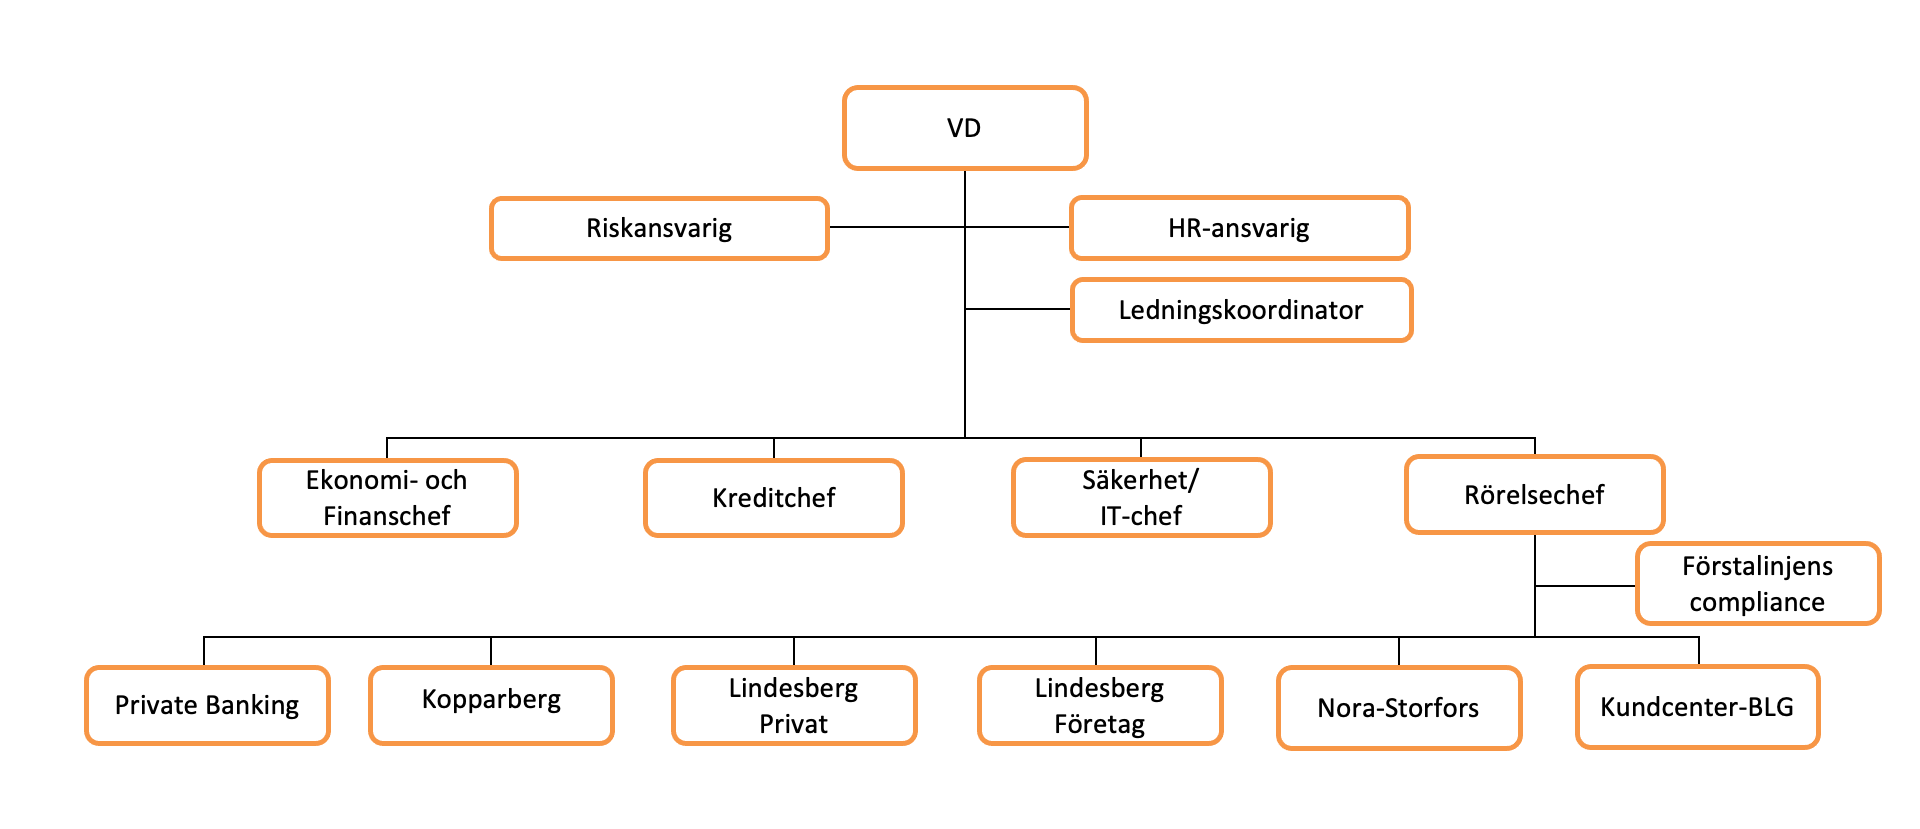 Organisationsschema